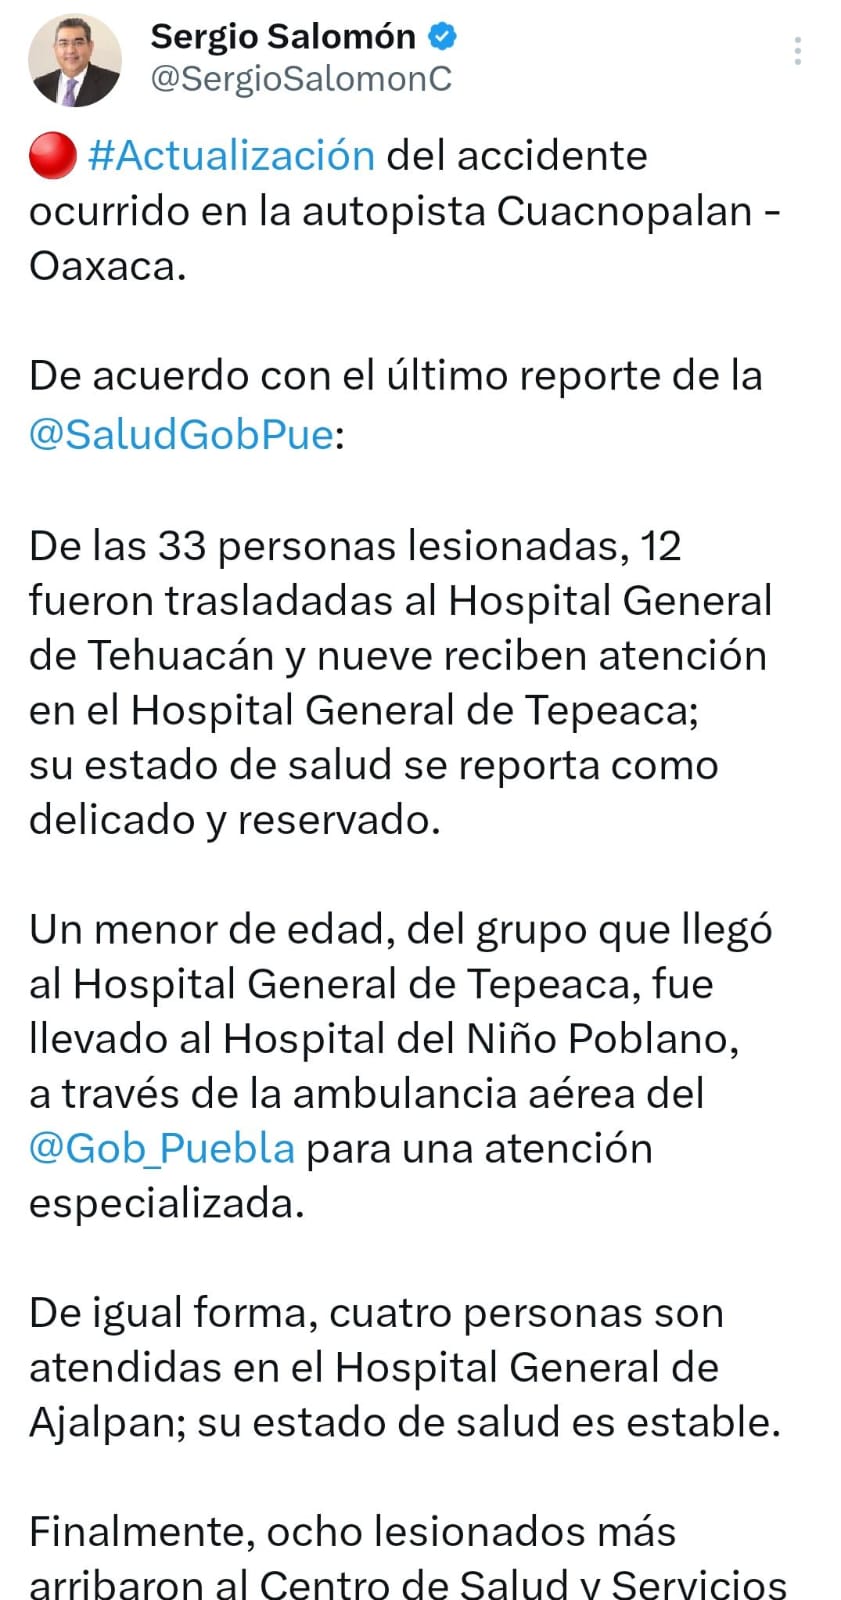 Sergio Salomón detalla que 9 personas lesionadas en Oaxaca están delicadas